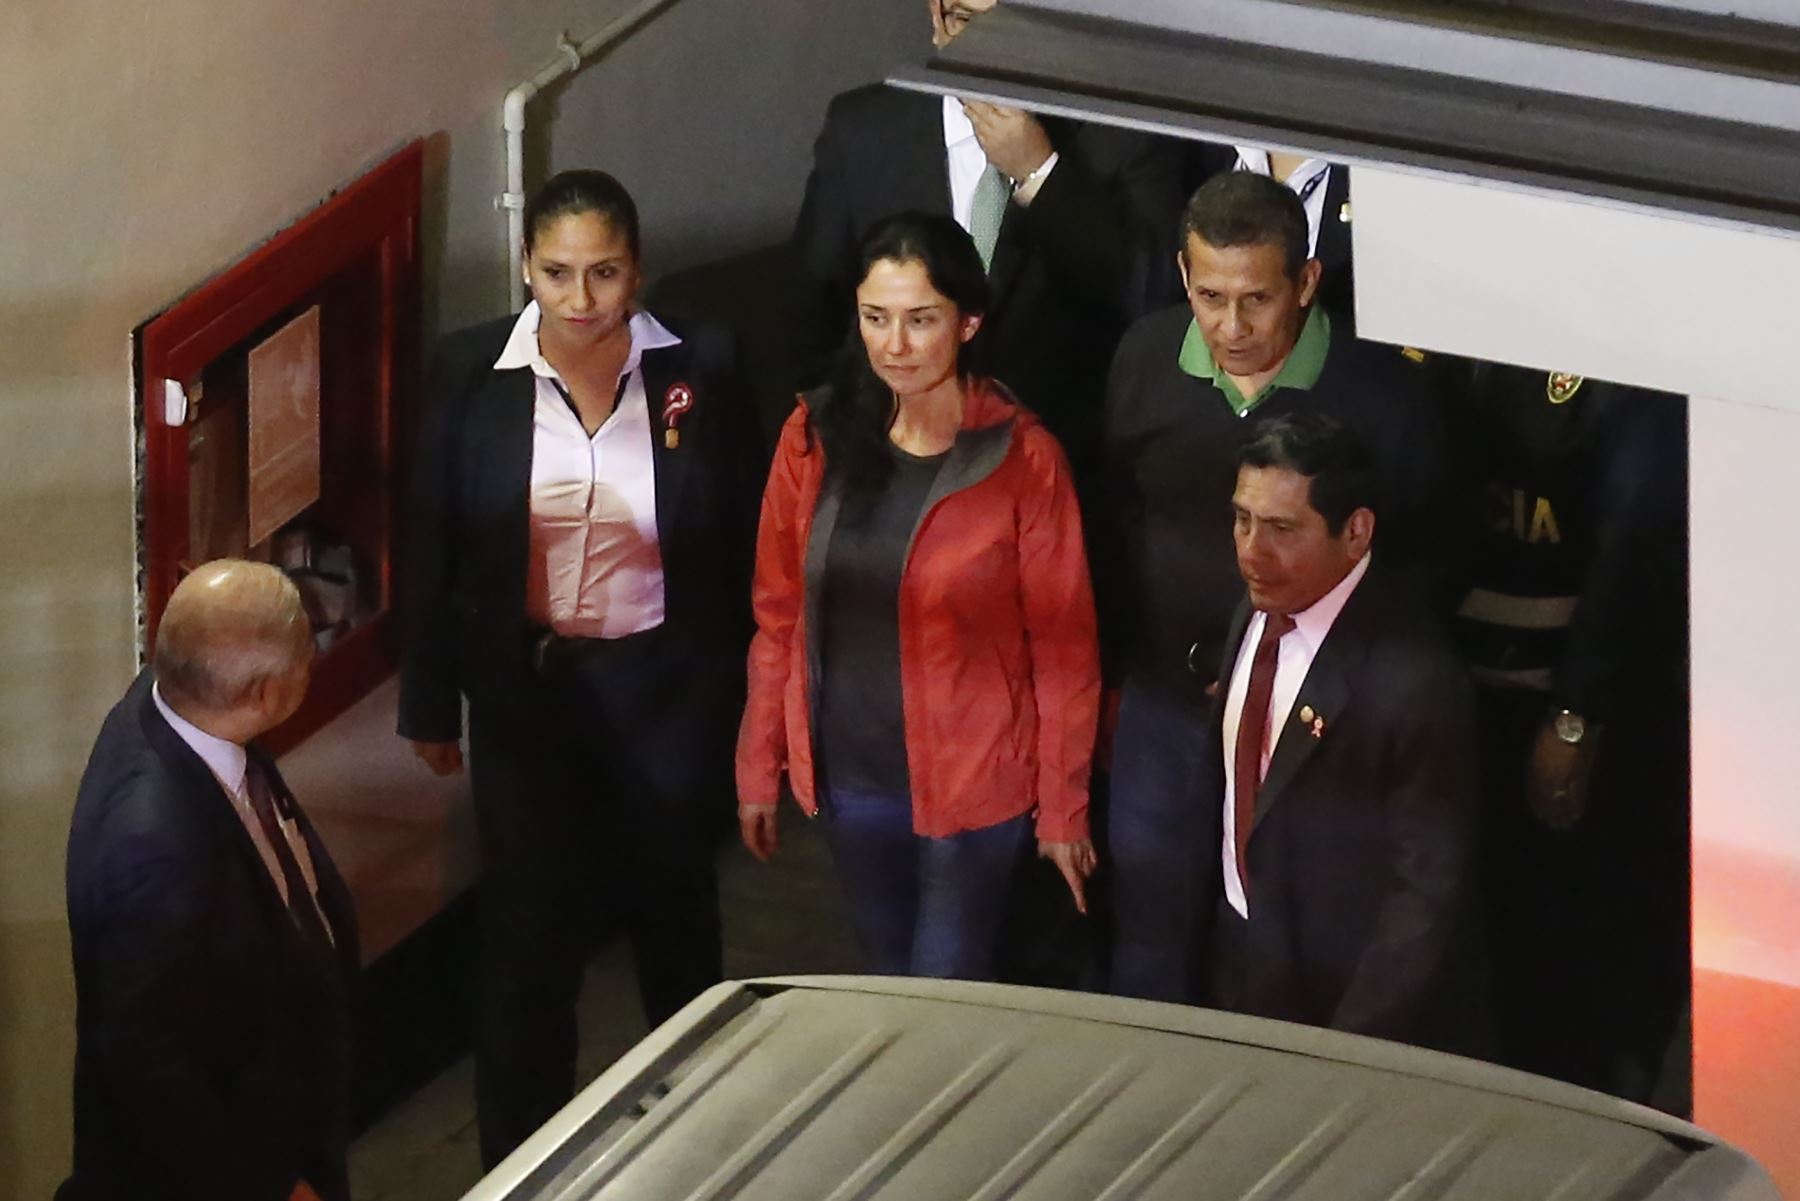 El fiscal Juárez investiga a Ollanta Humala y Nadie Heredia por lavado de activos. Los acusa de haber recibido de Odebrecht U$ 3 millones para su campaña del 2011.